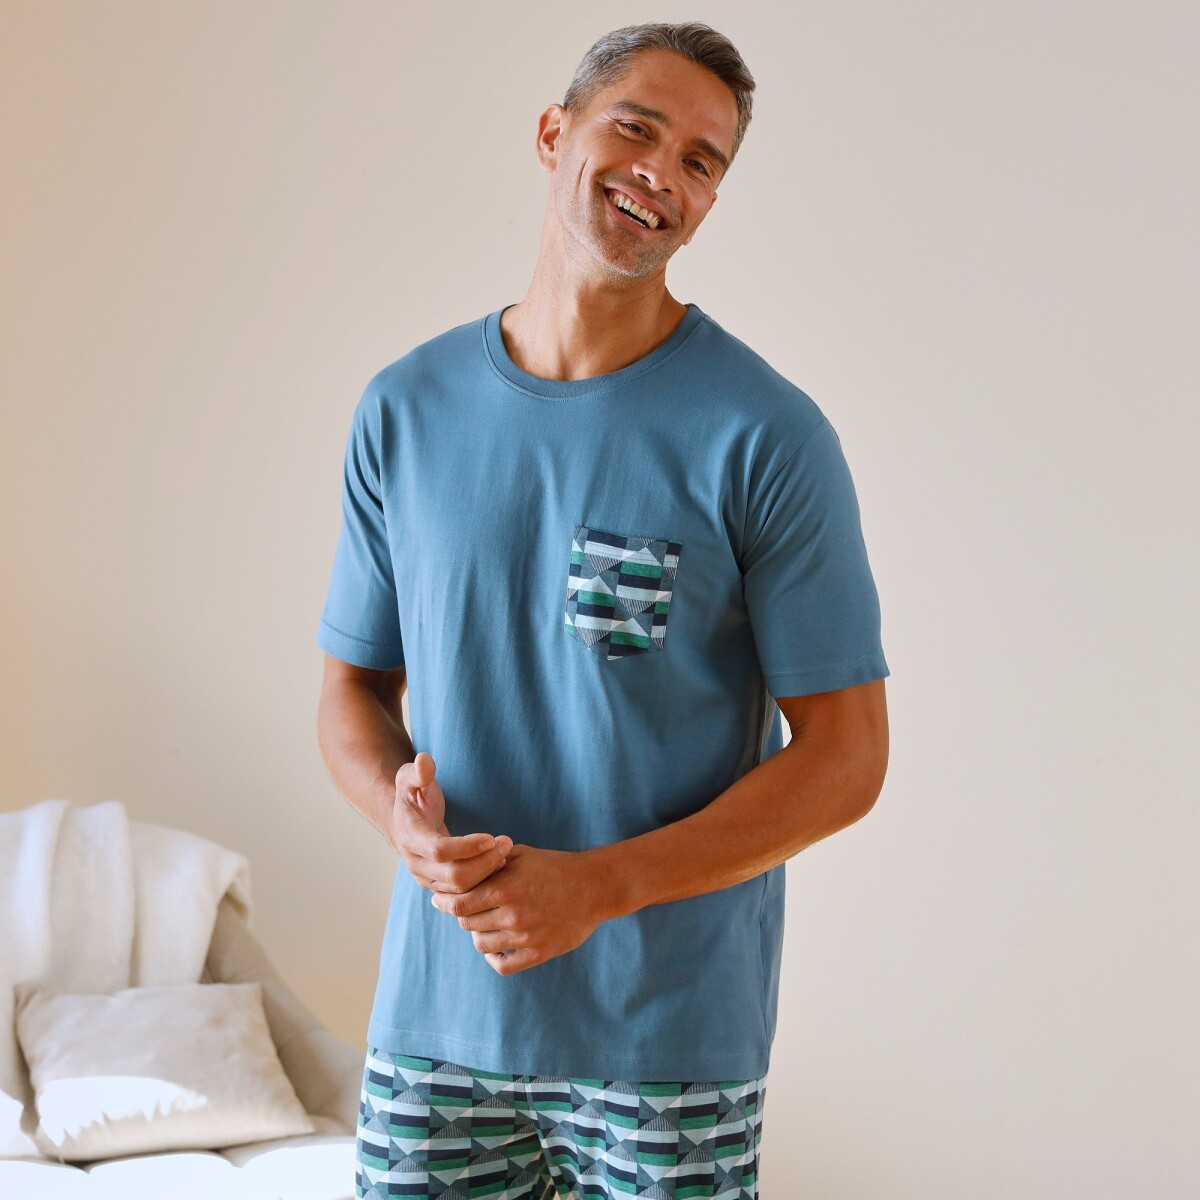 Pyžamové tričko s krátkými rukávy, modré